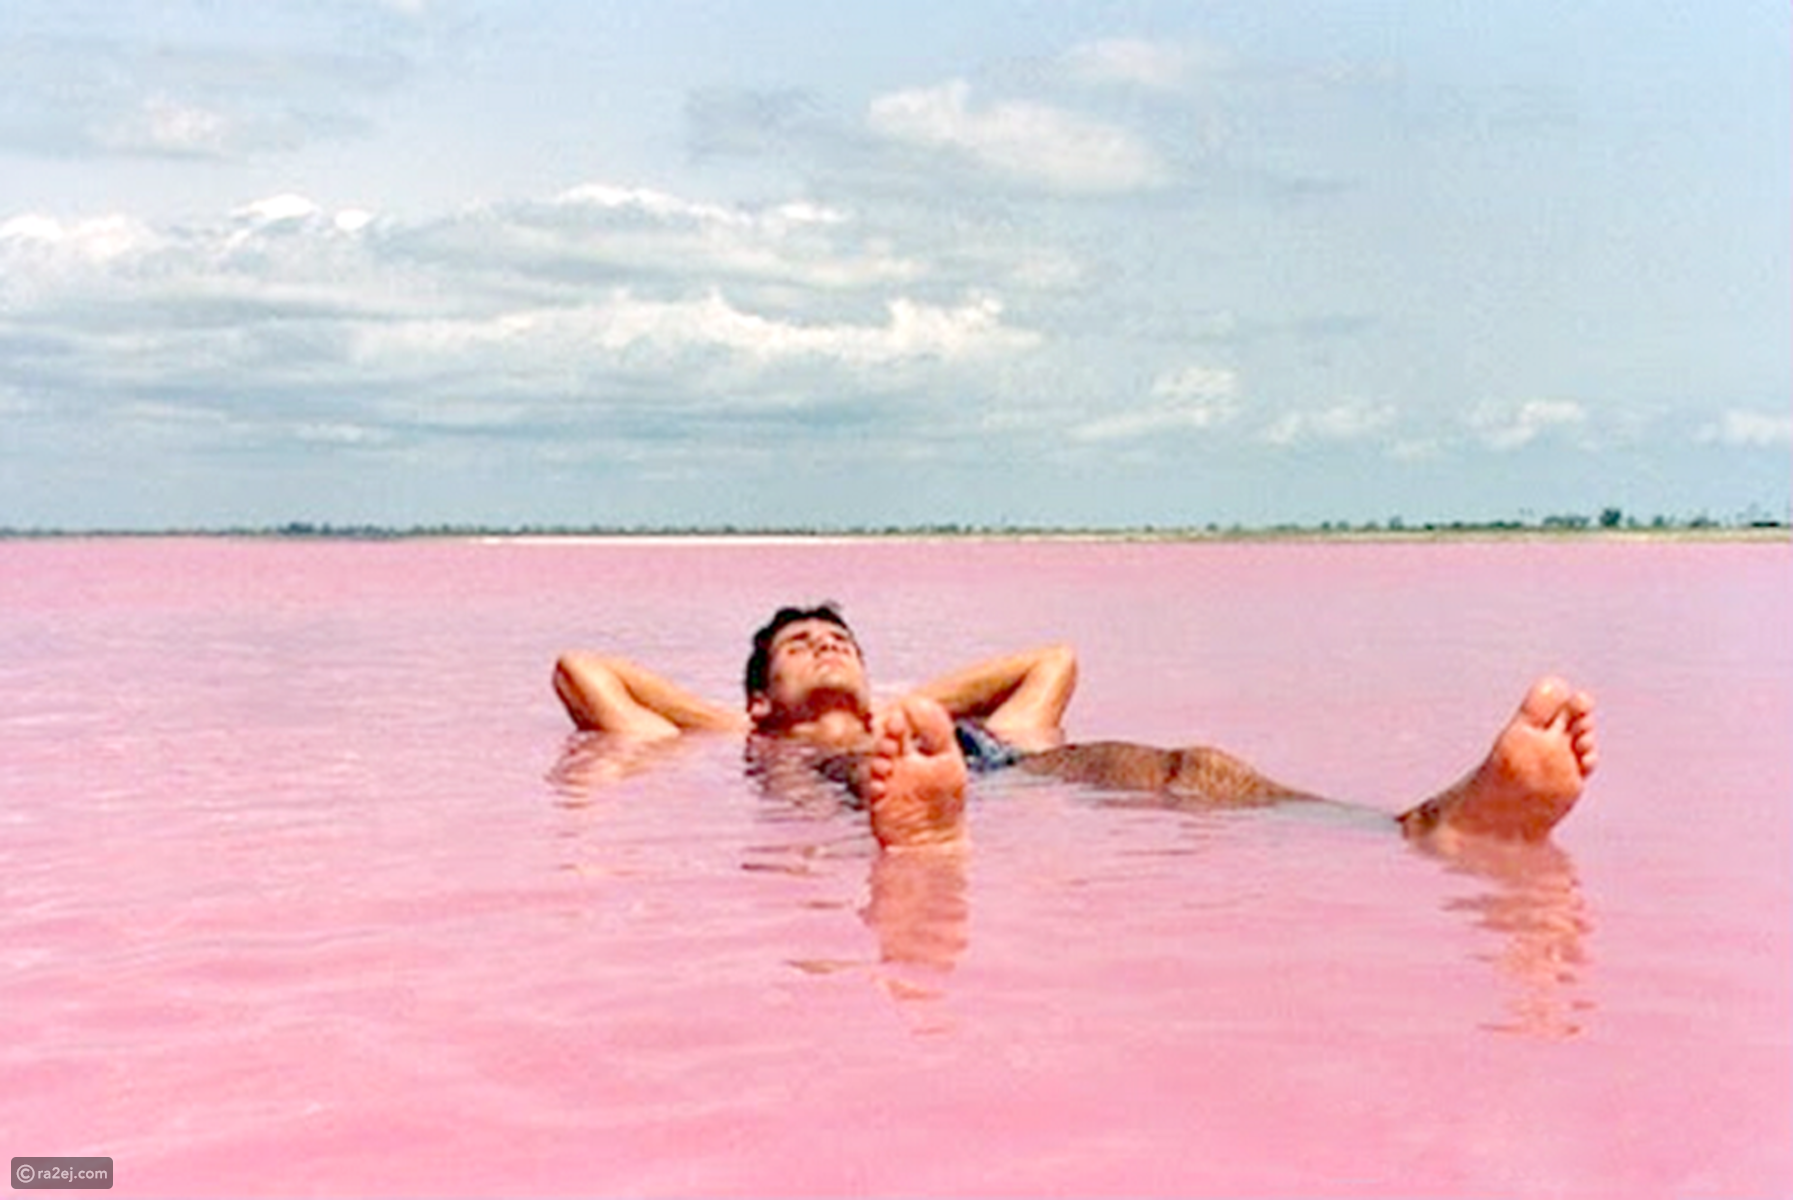 بحيرة هيلير أو البحيرة الوردية في غرب أستراليا Ae1ef88c8b2520f7a78f8b7dd87a7efdf3f251ea-041016125312.png?preset=v3